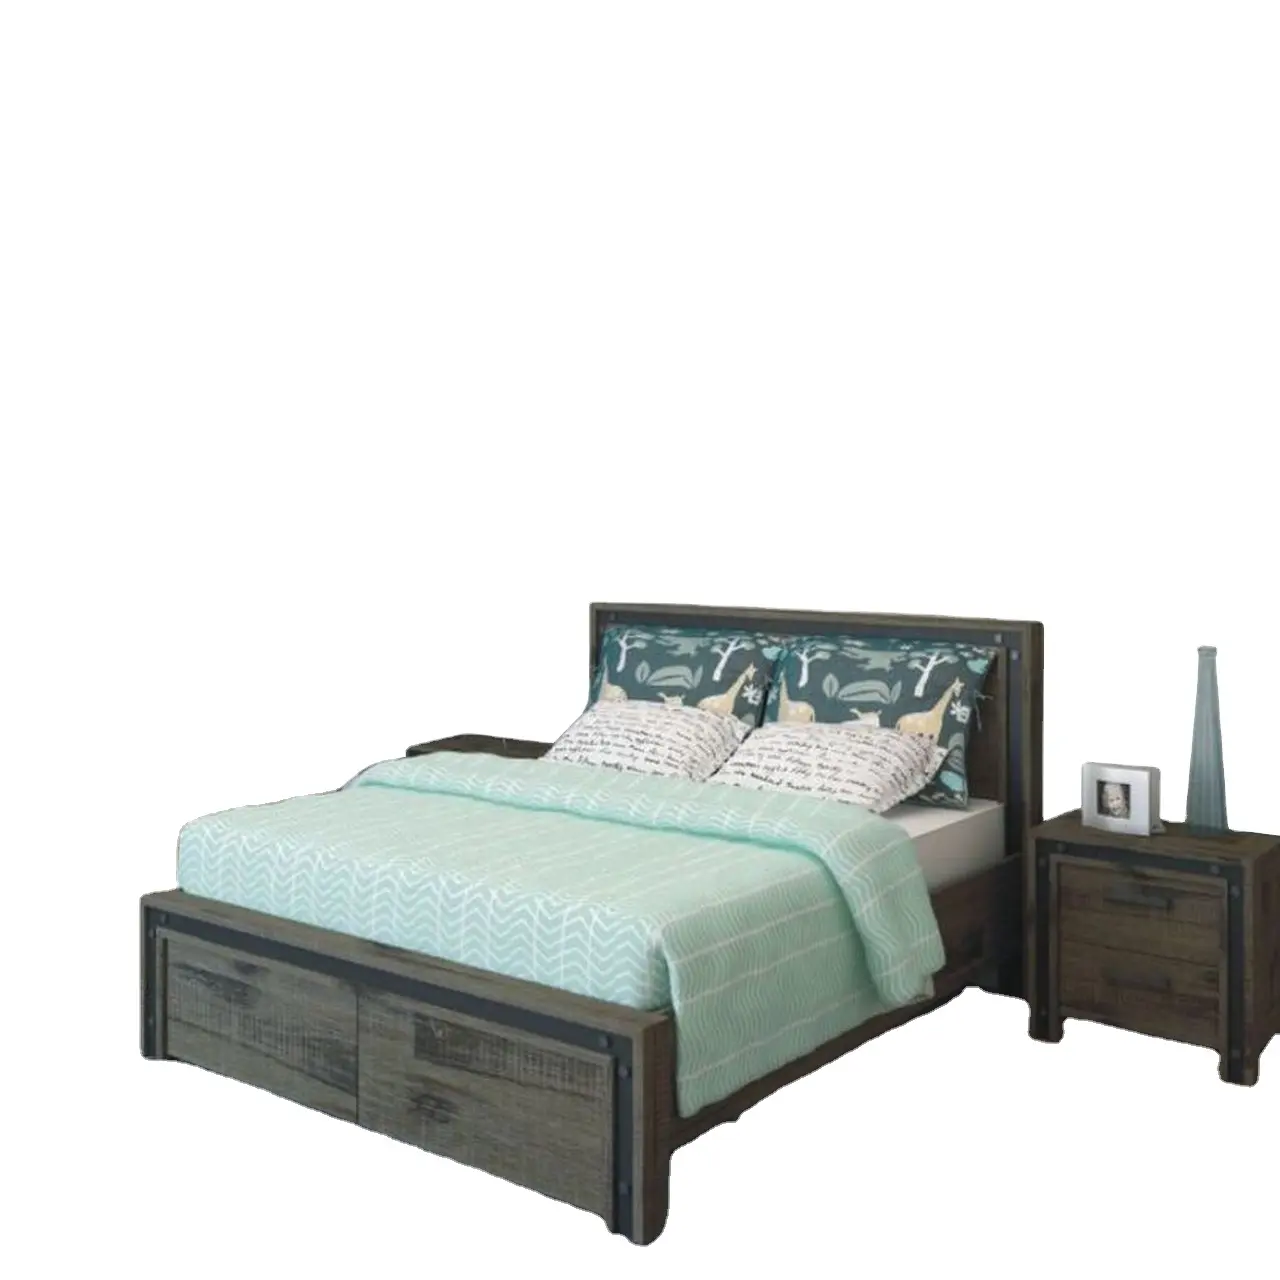 Ensemble de cadre de lit en bois, meubles de chambre à coucher en métal finition brossée, style industriel, taille King, nouveau modèle